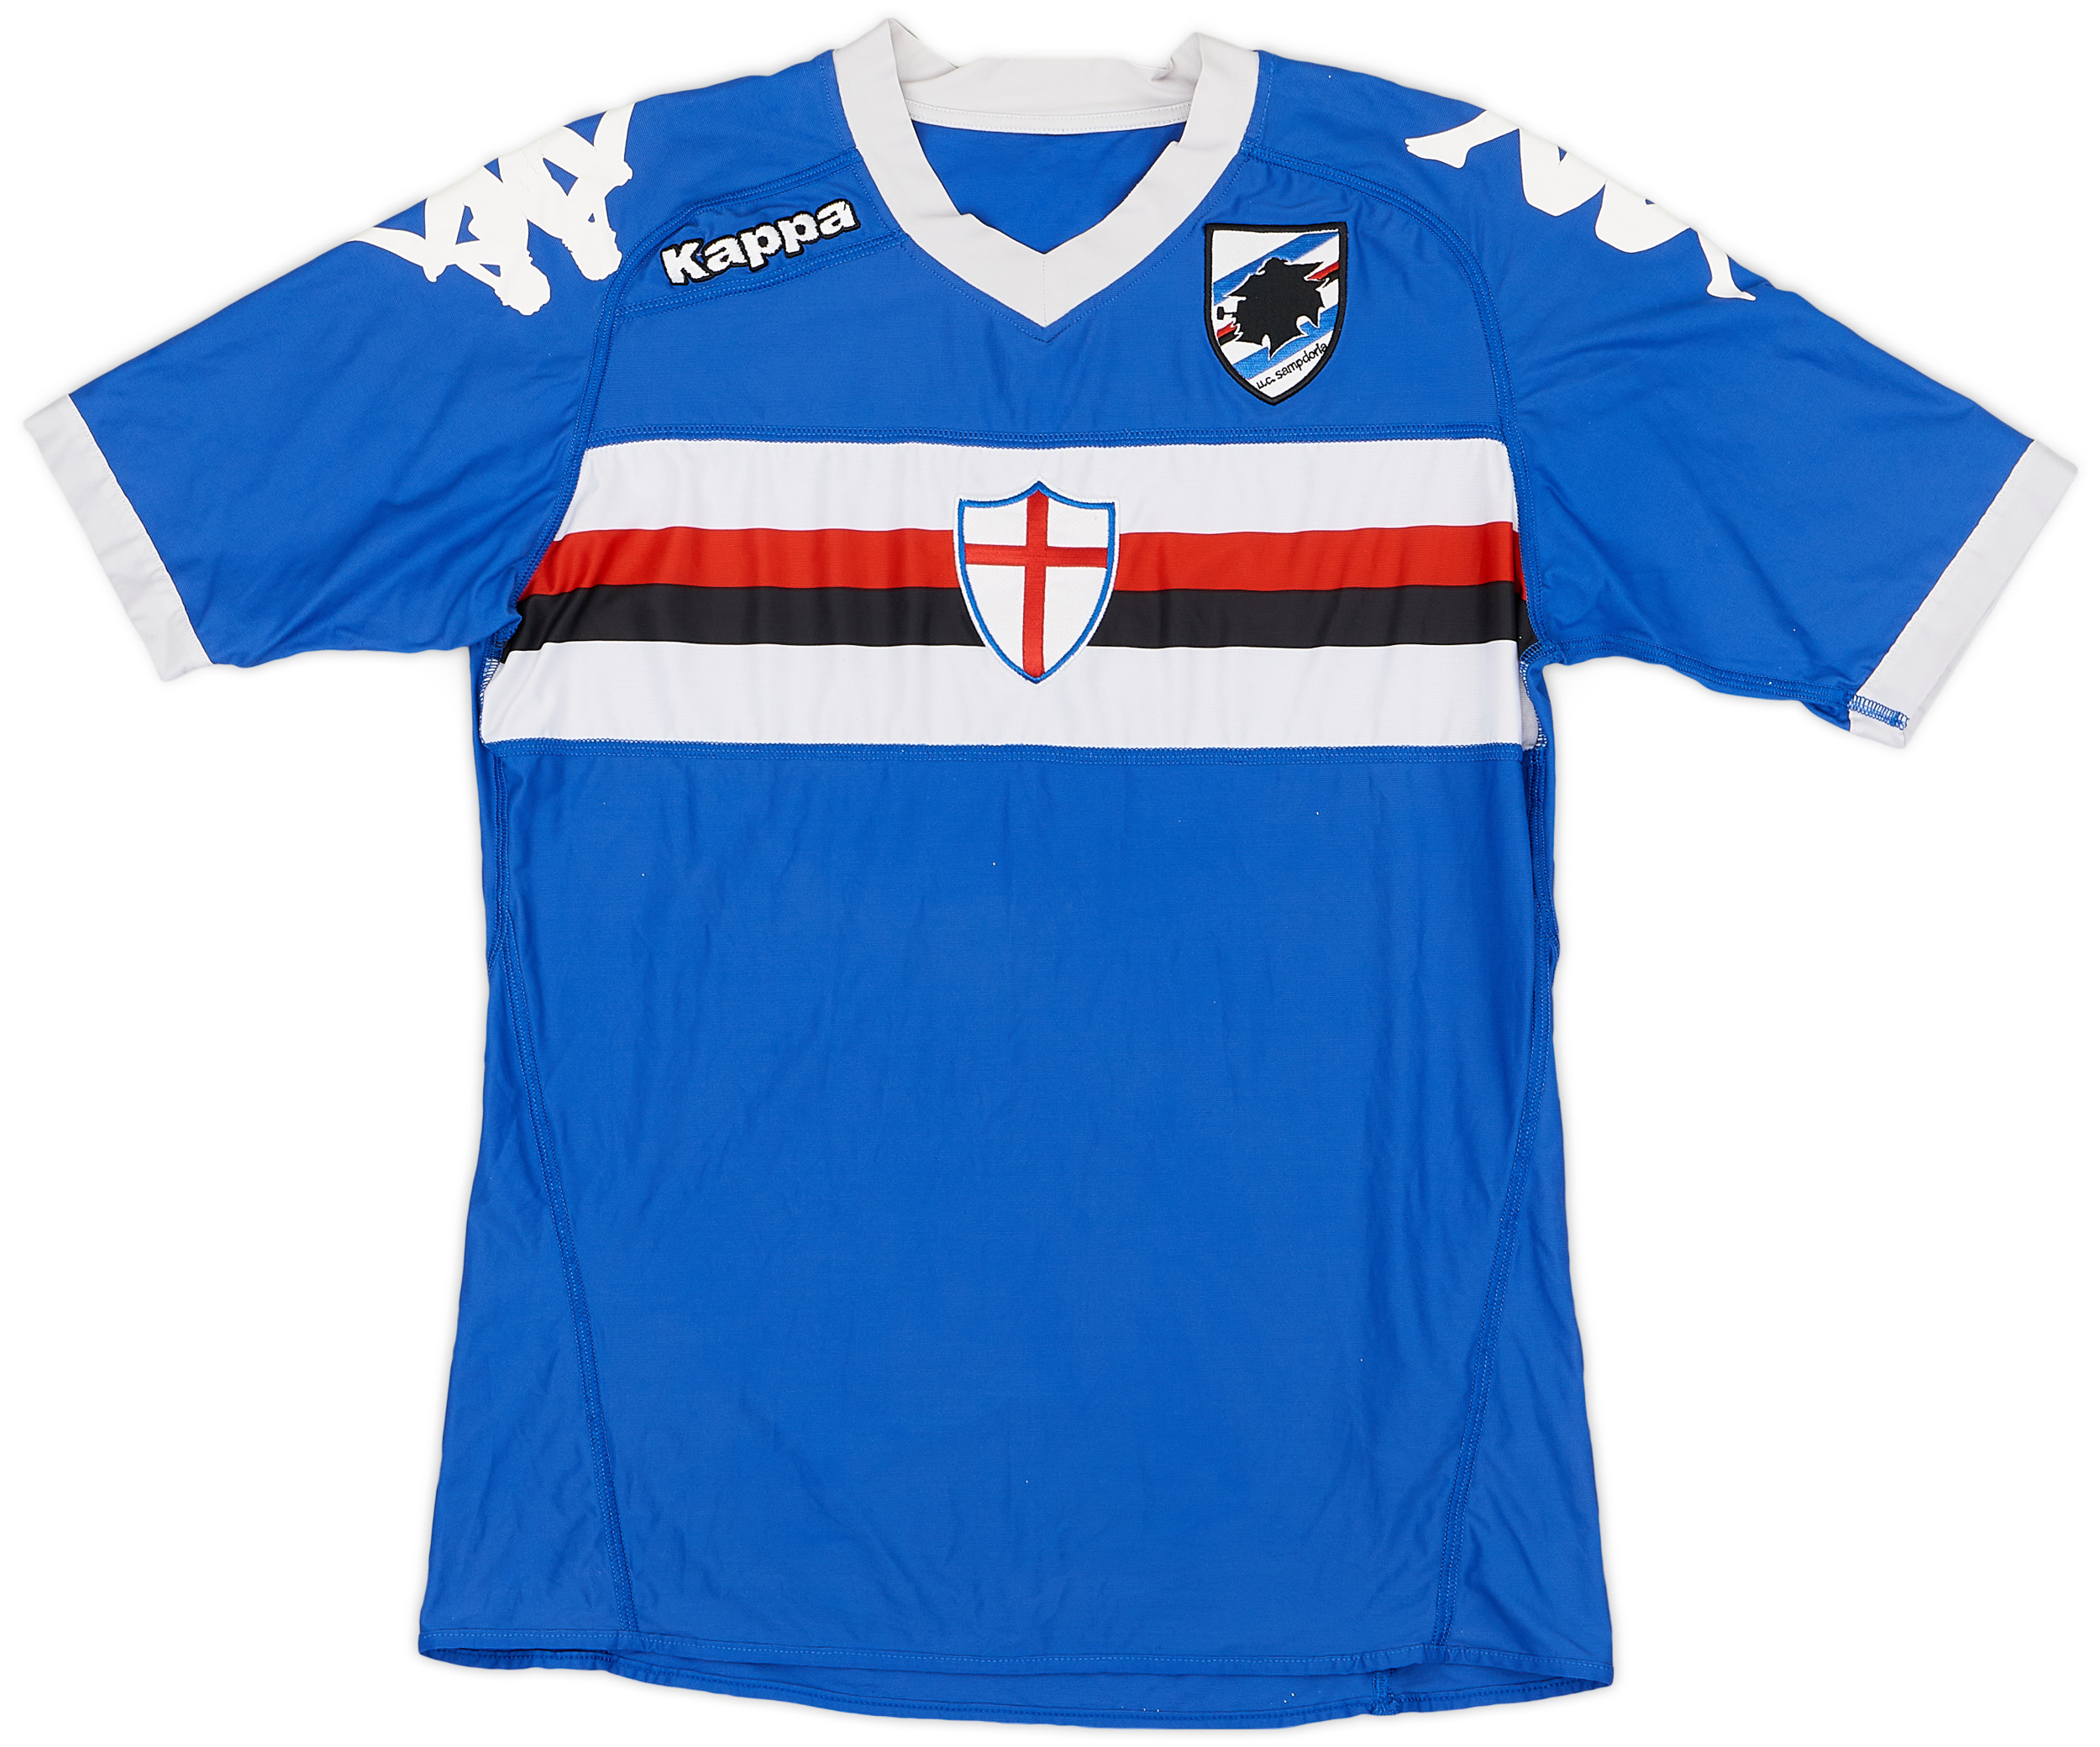 2010-11 Sampdoria Home Shirt - 6/10 - ()